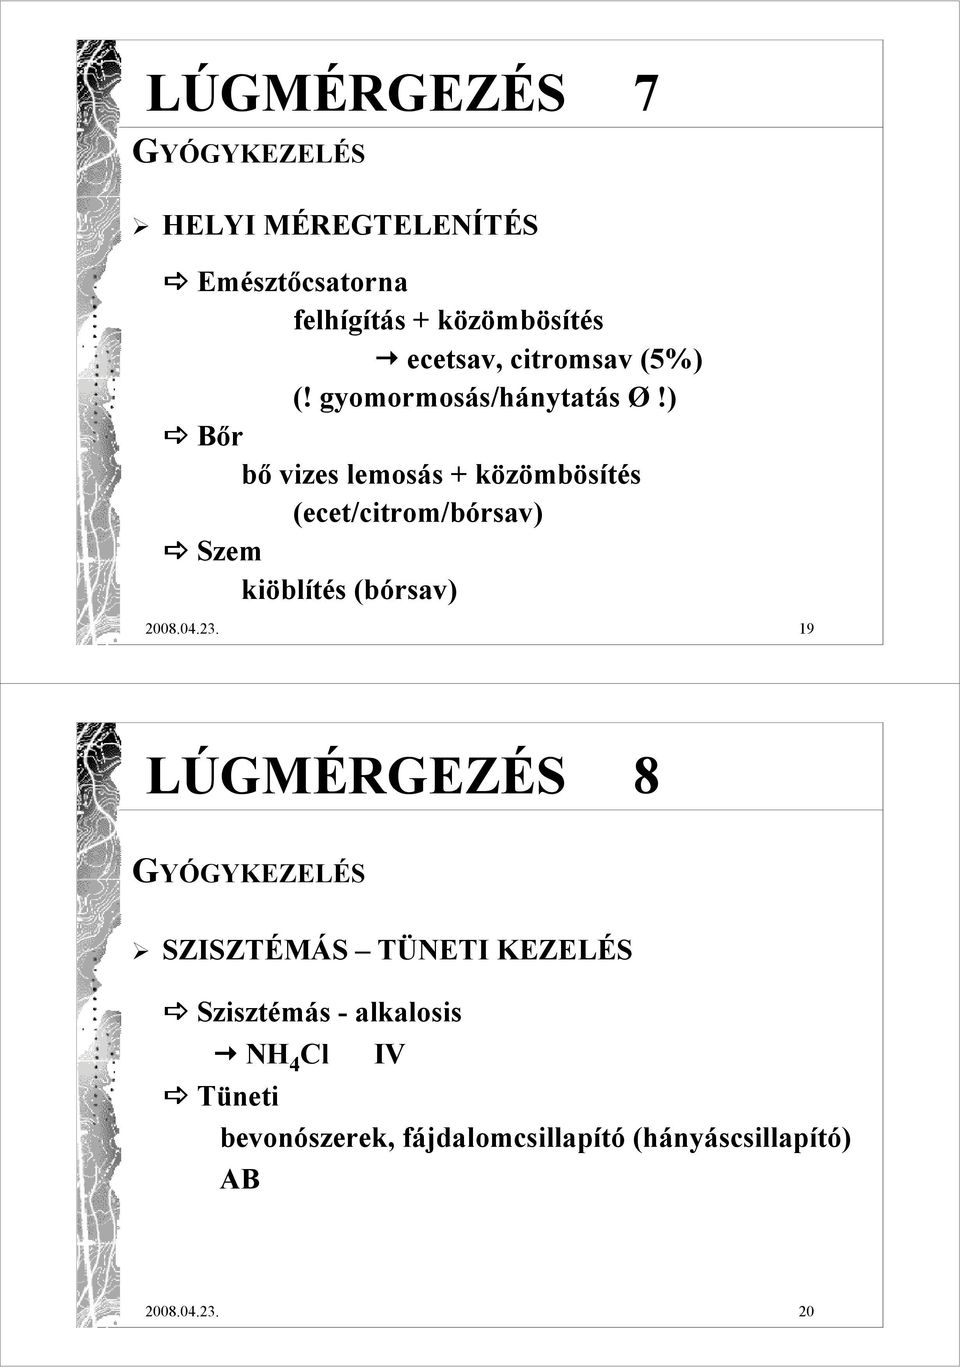 ) Bır bı vizes lemosás + közömbösítés (ecet/citrom/bórsav) Szem kiöblítés (bórsav) 2008.04.23.